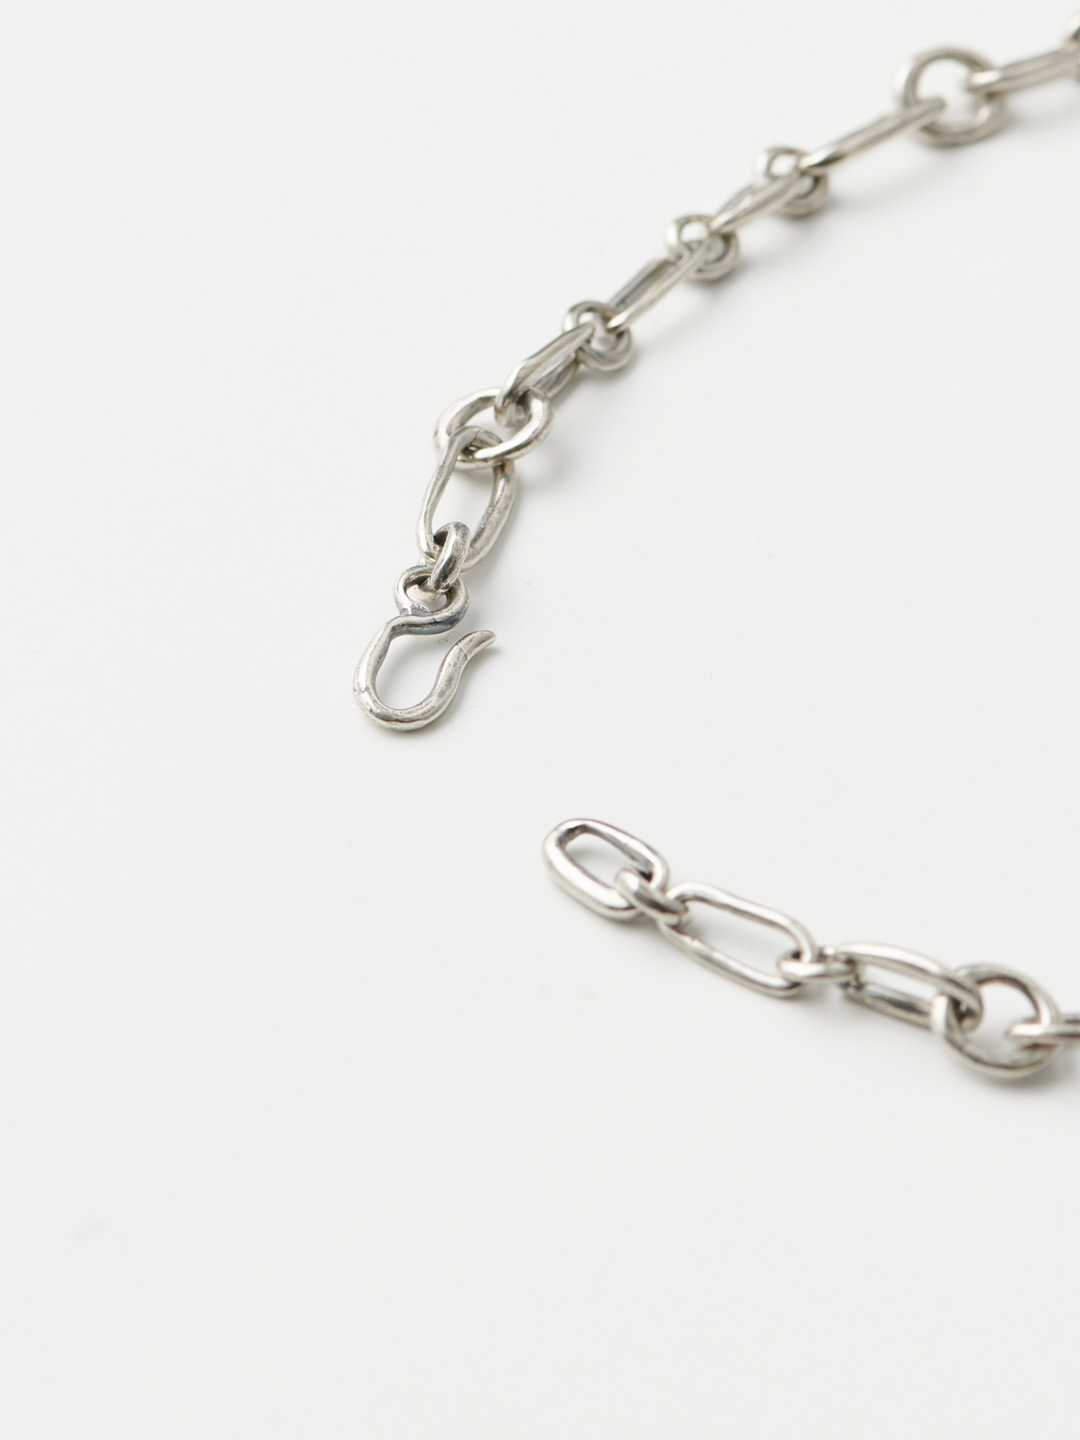 Grecian Chain Necklace - Silver